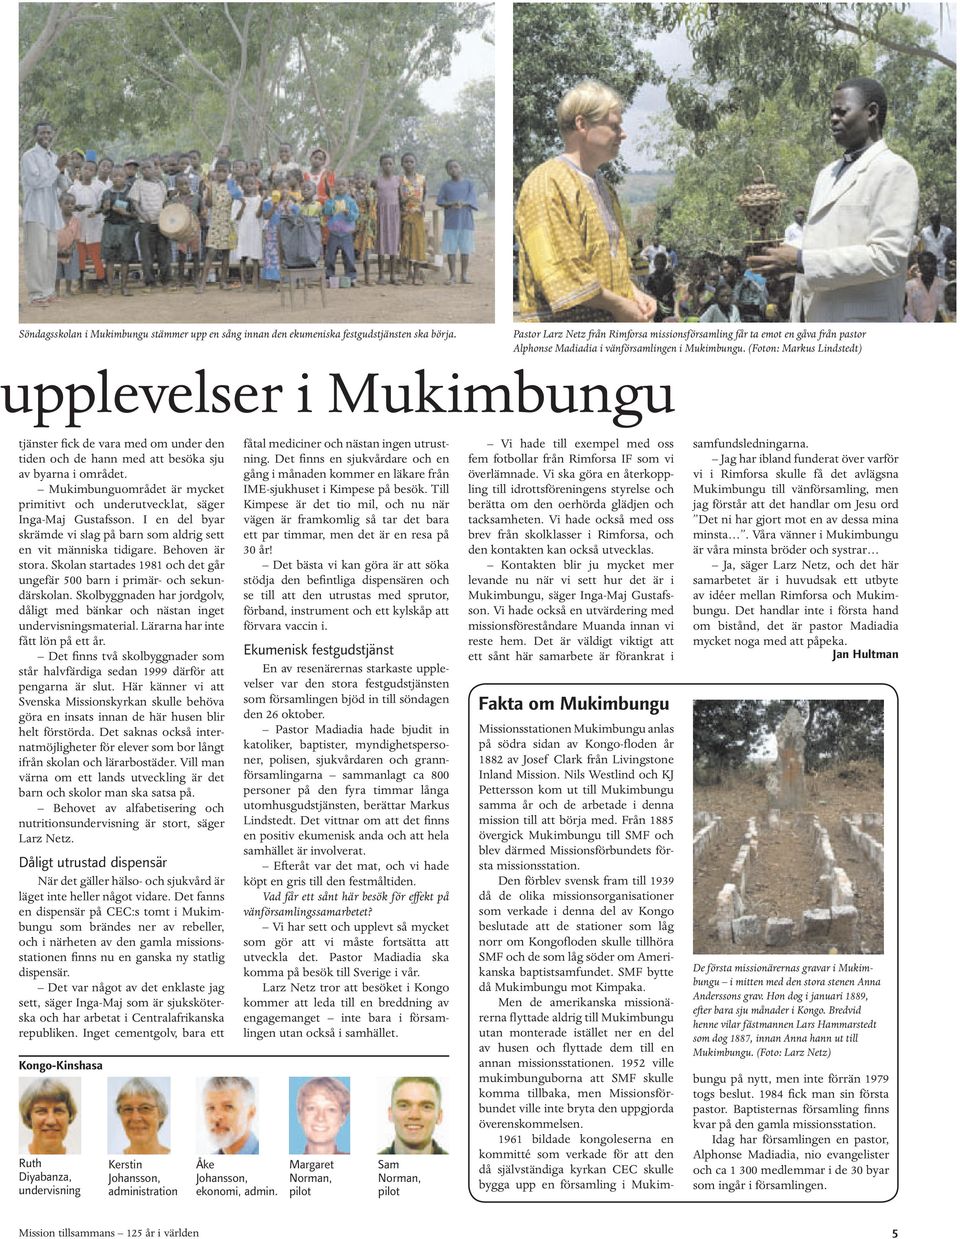 (Foton: Markus Lindstedt) upplevelser i Mukimbungu tjänster fick de vara med om under den tiden och de hann med att besöka sju av byarna i området.